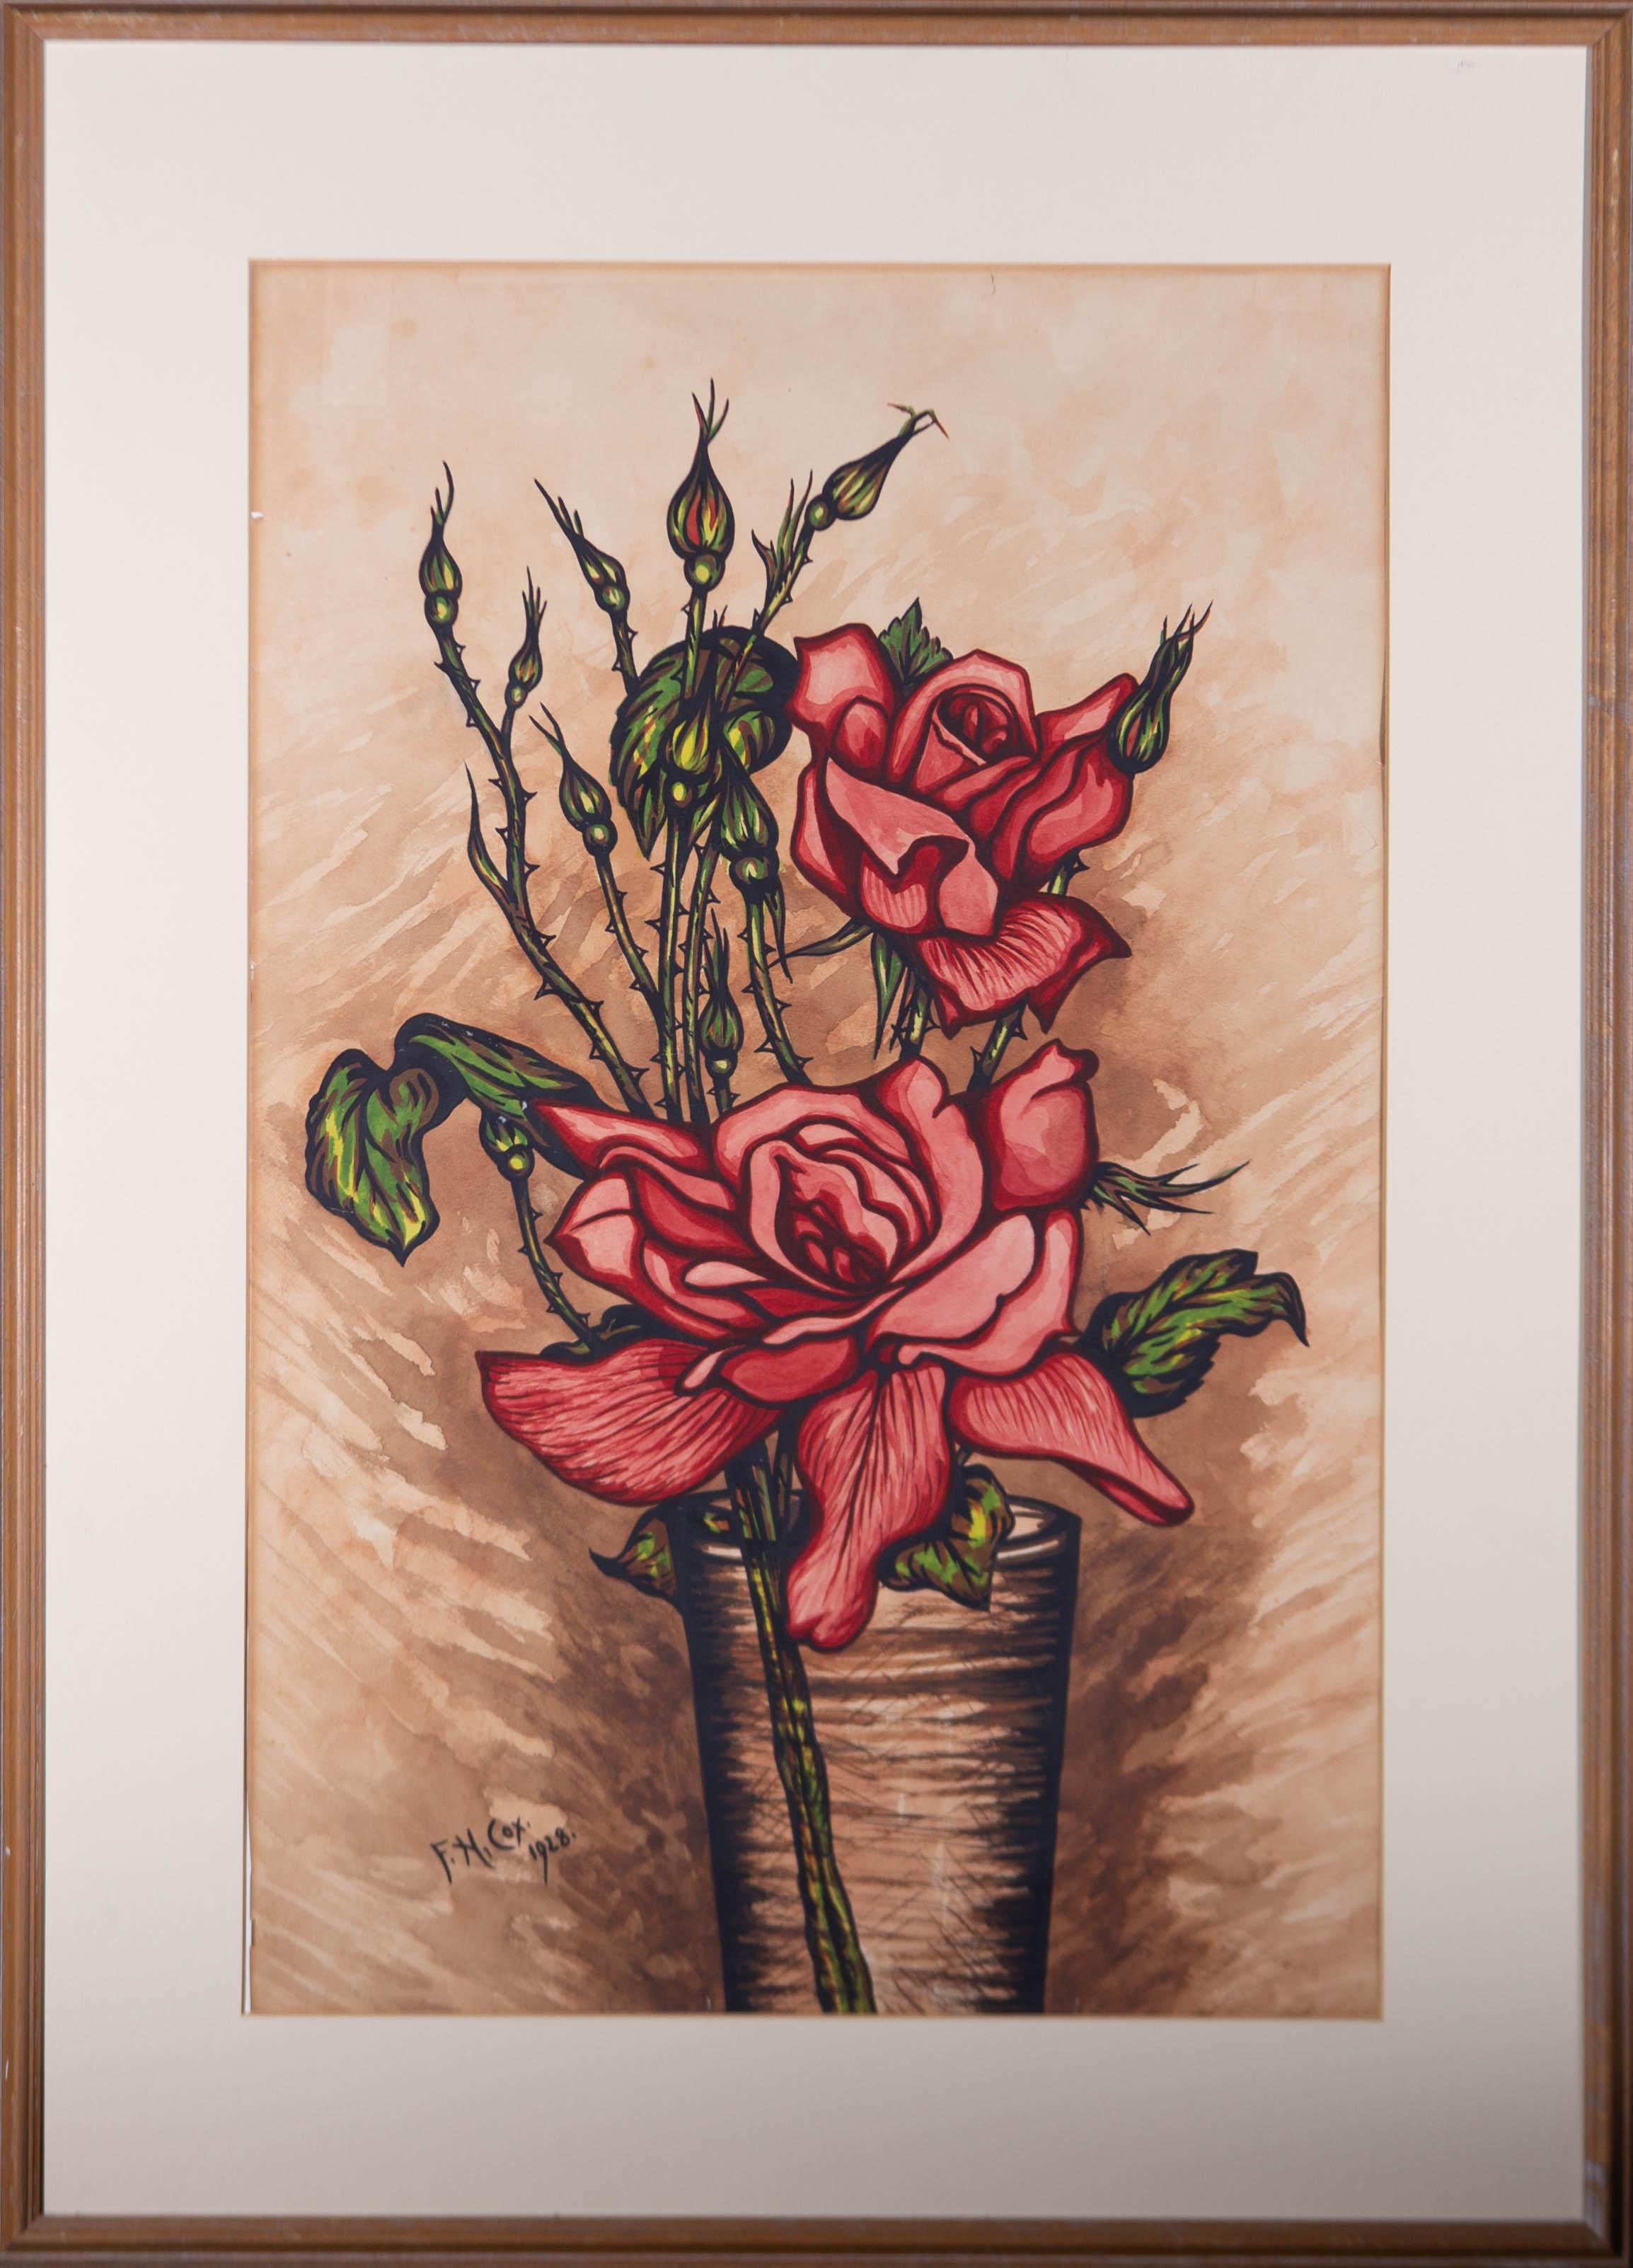 Ein bezauberndes Aquarell mit Gouache von F.N. Cox, der eine Stillleben-Szene mit zwei roten Rosen in einer hohen Vase darstellt. Signiert und datiert in der linken unteren Ecke. Präsentiert in einem cremefarbenen Passepartout und in einem dünnen